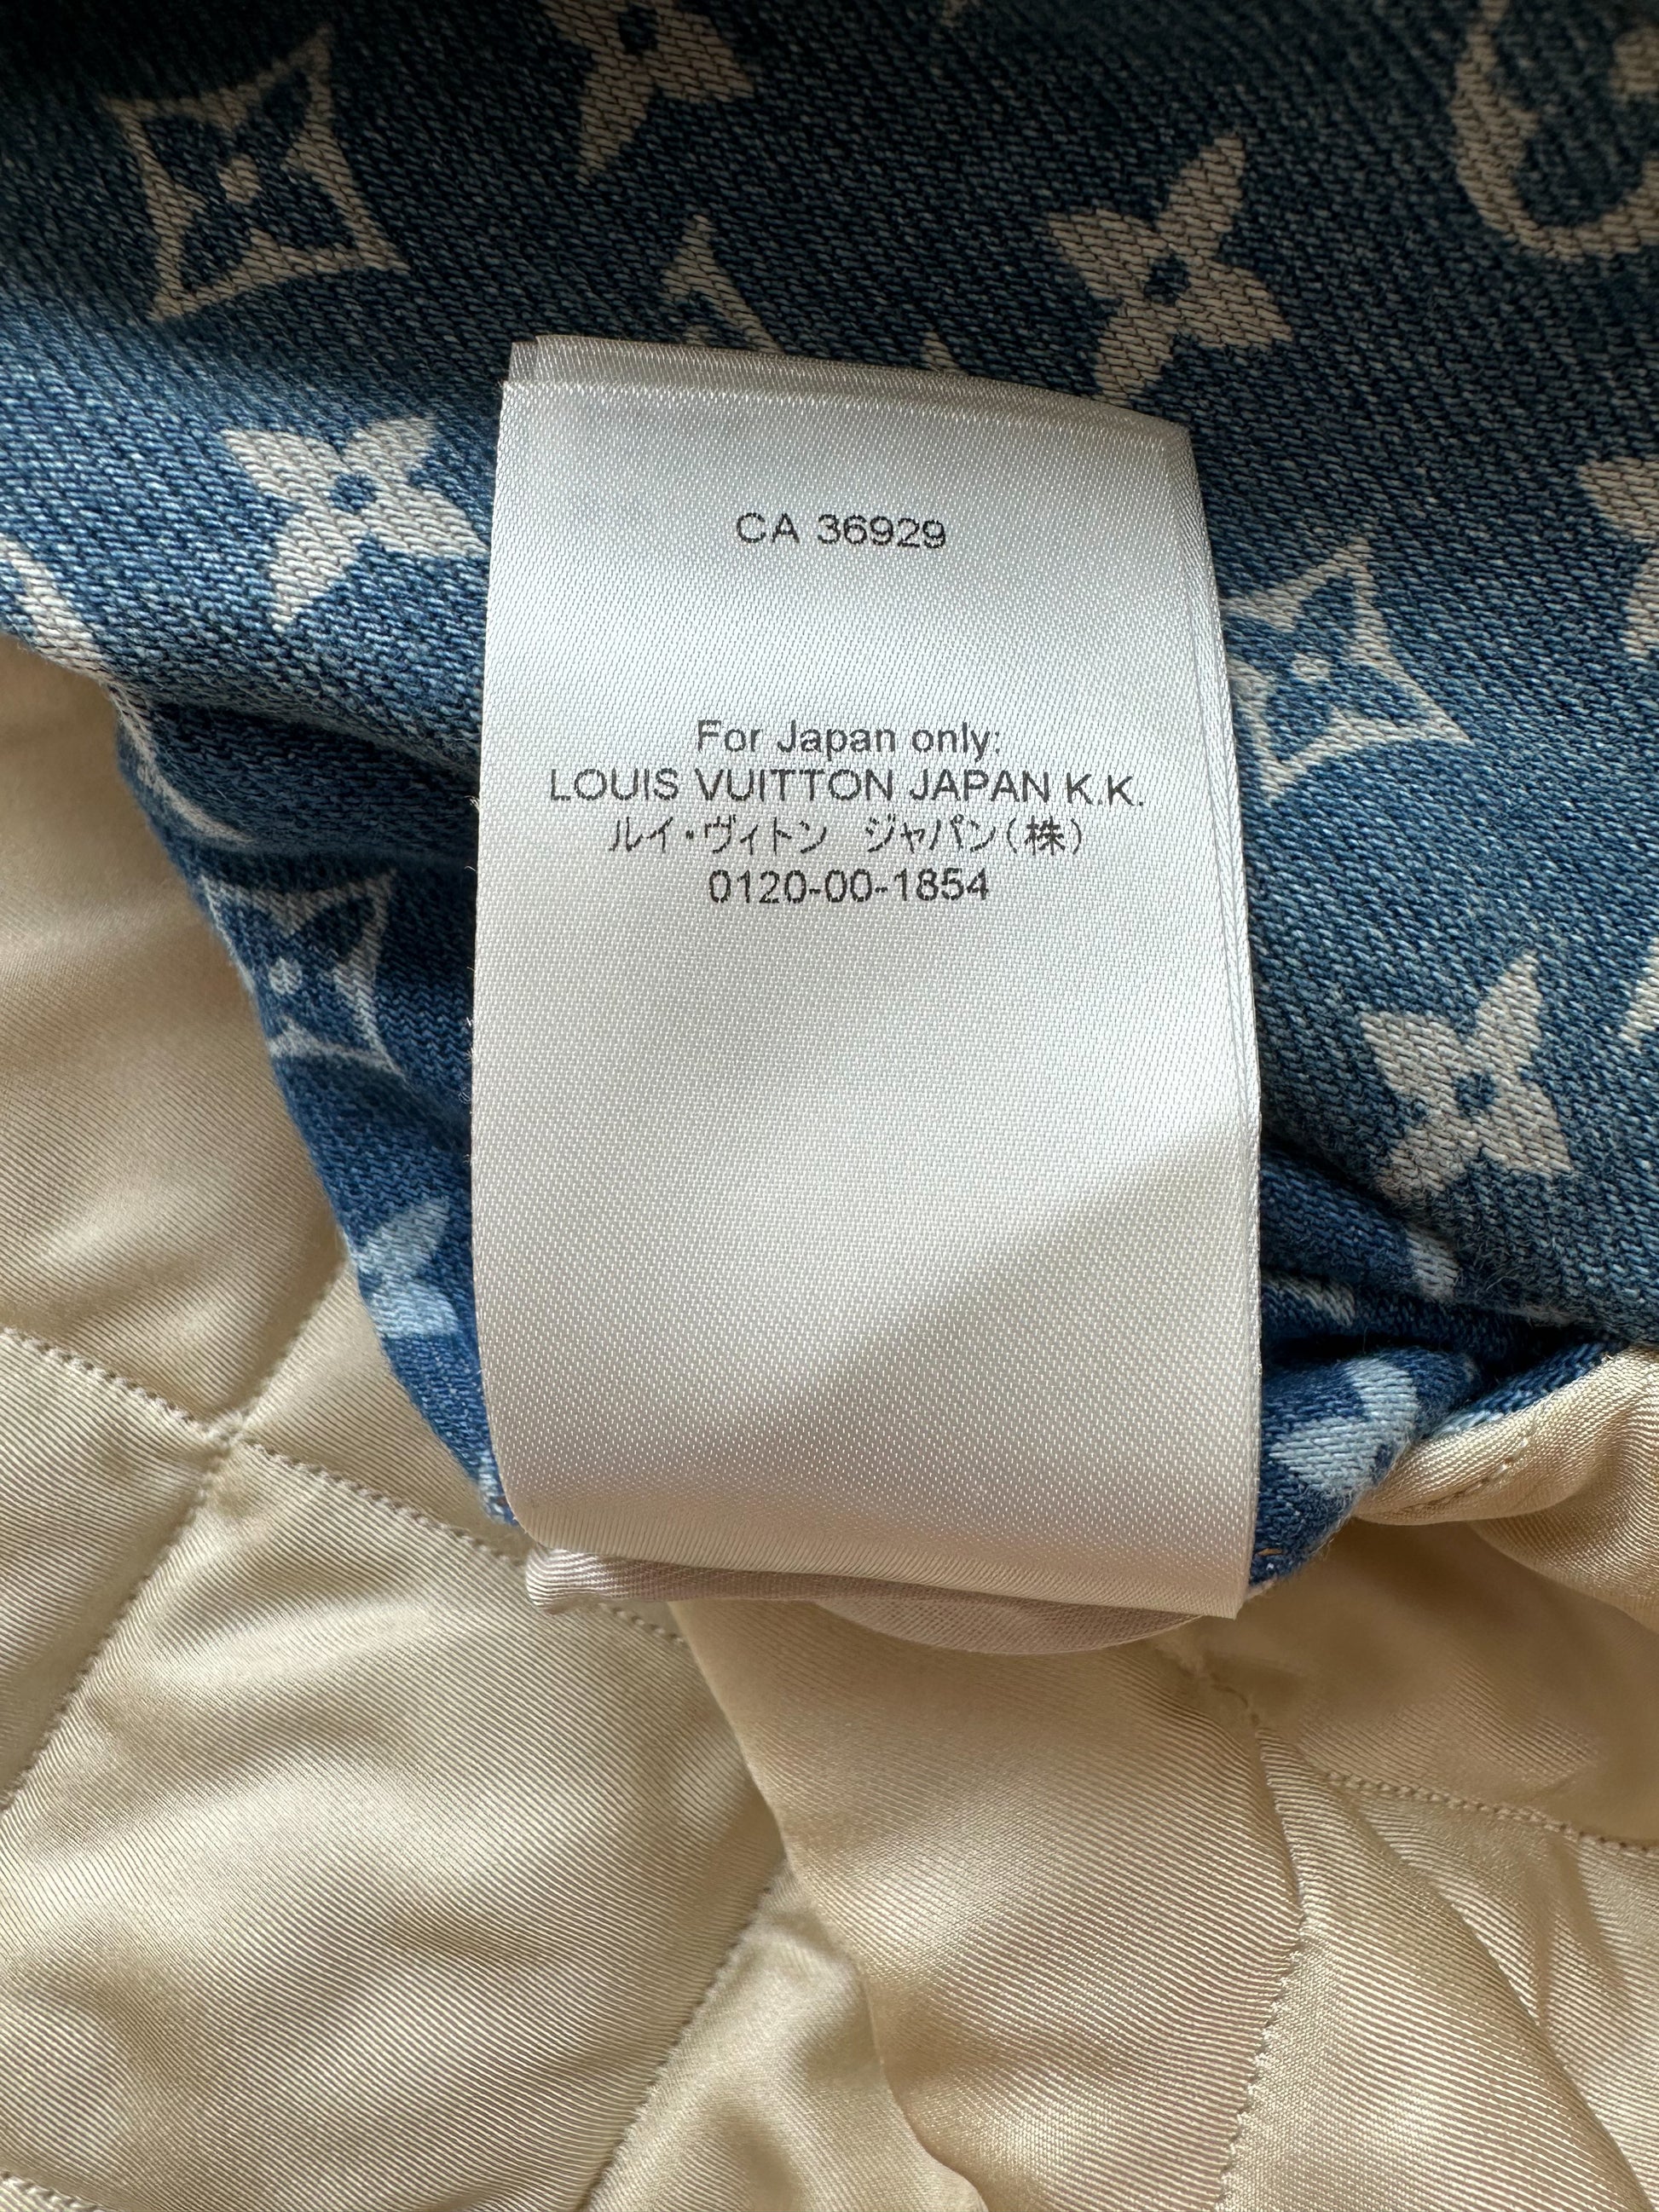 FWRD Renew Louis Vuitton Monogram Denim Jacket in Blue